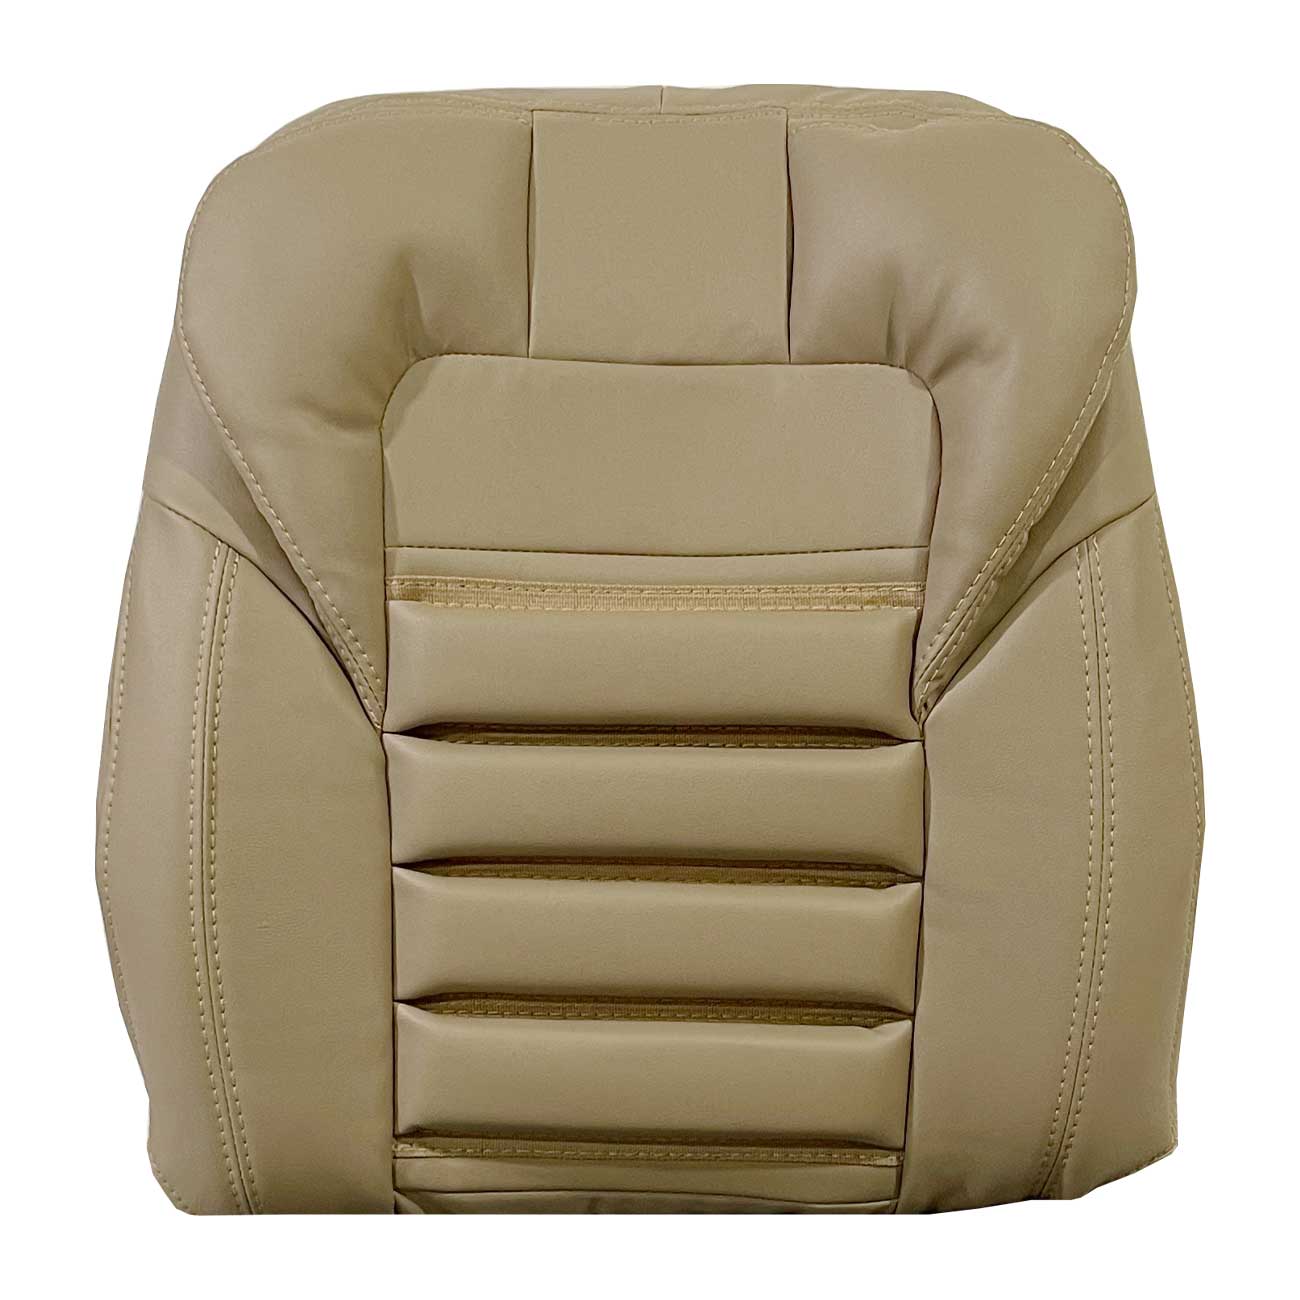  روکش صندلی خودرو مدل Fs113 مناسب برای سمند